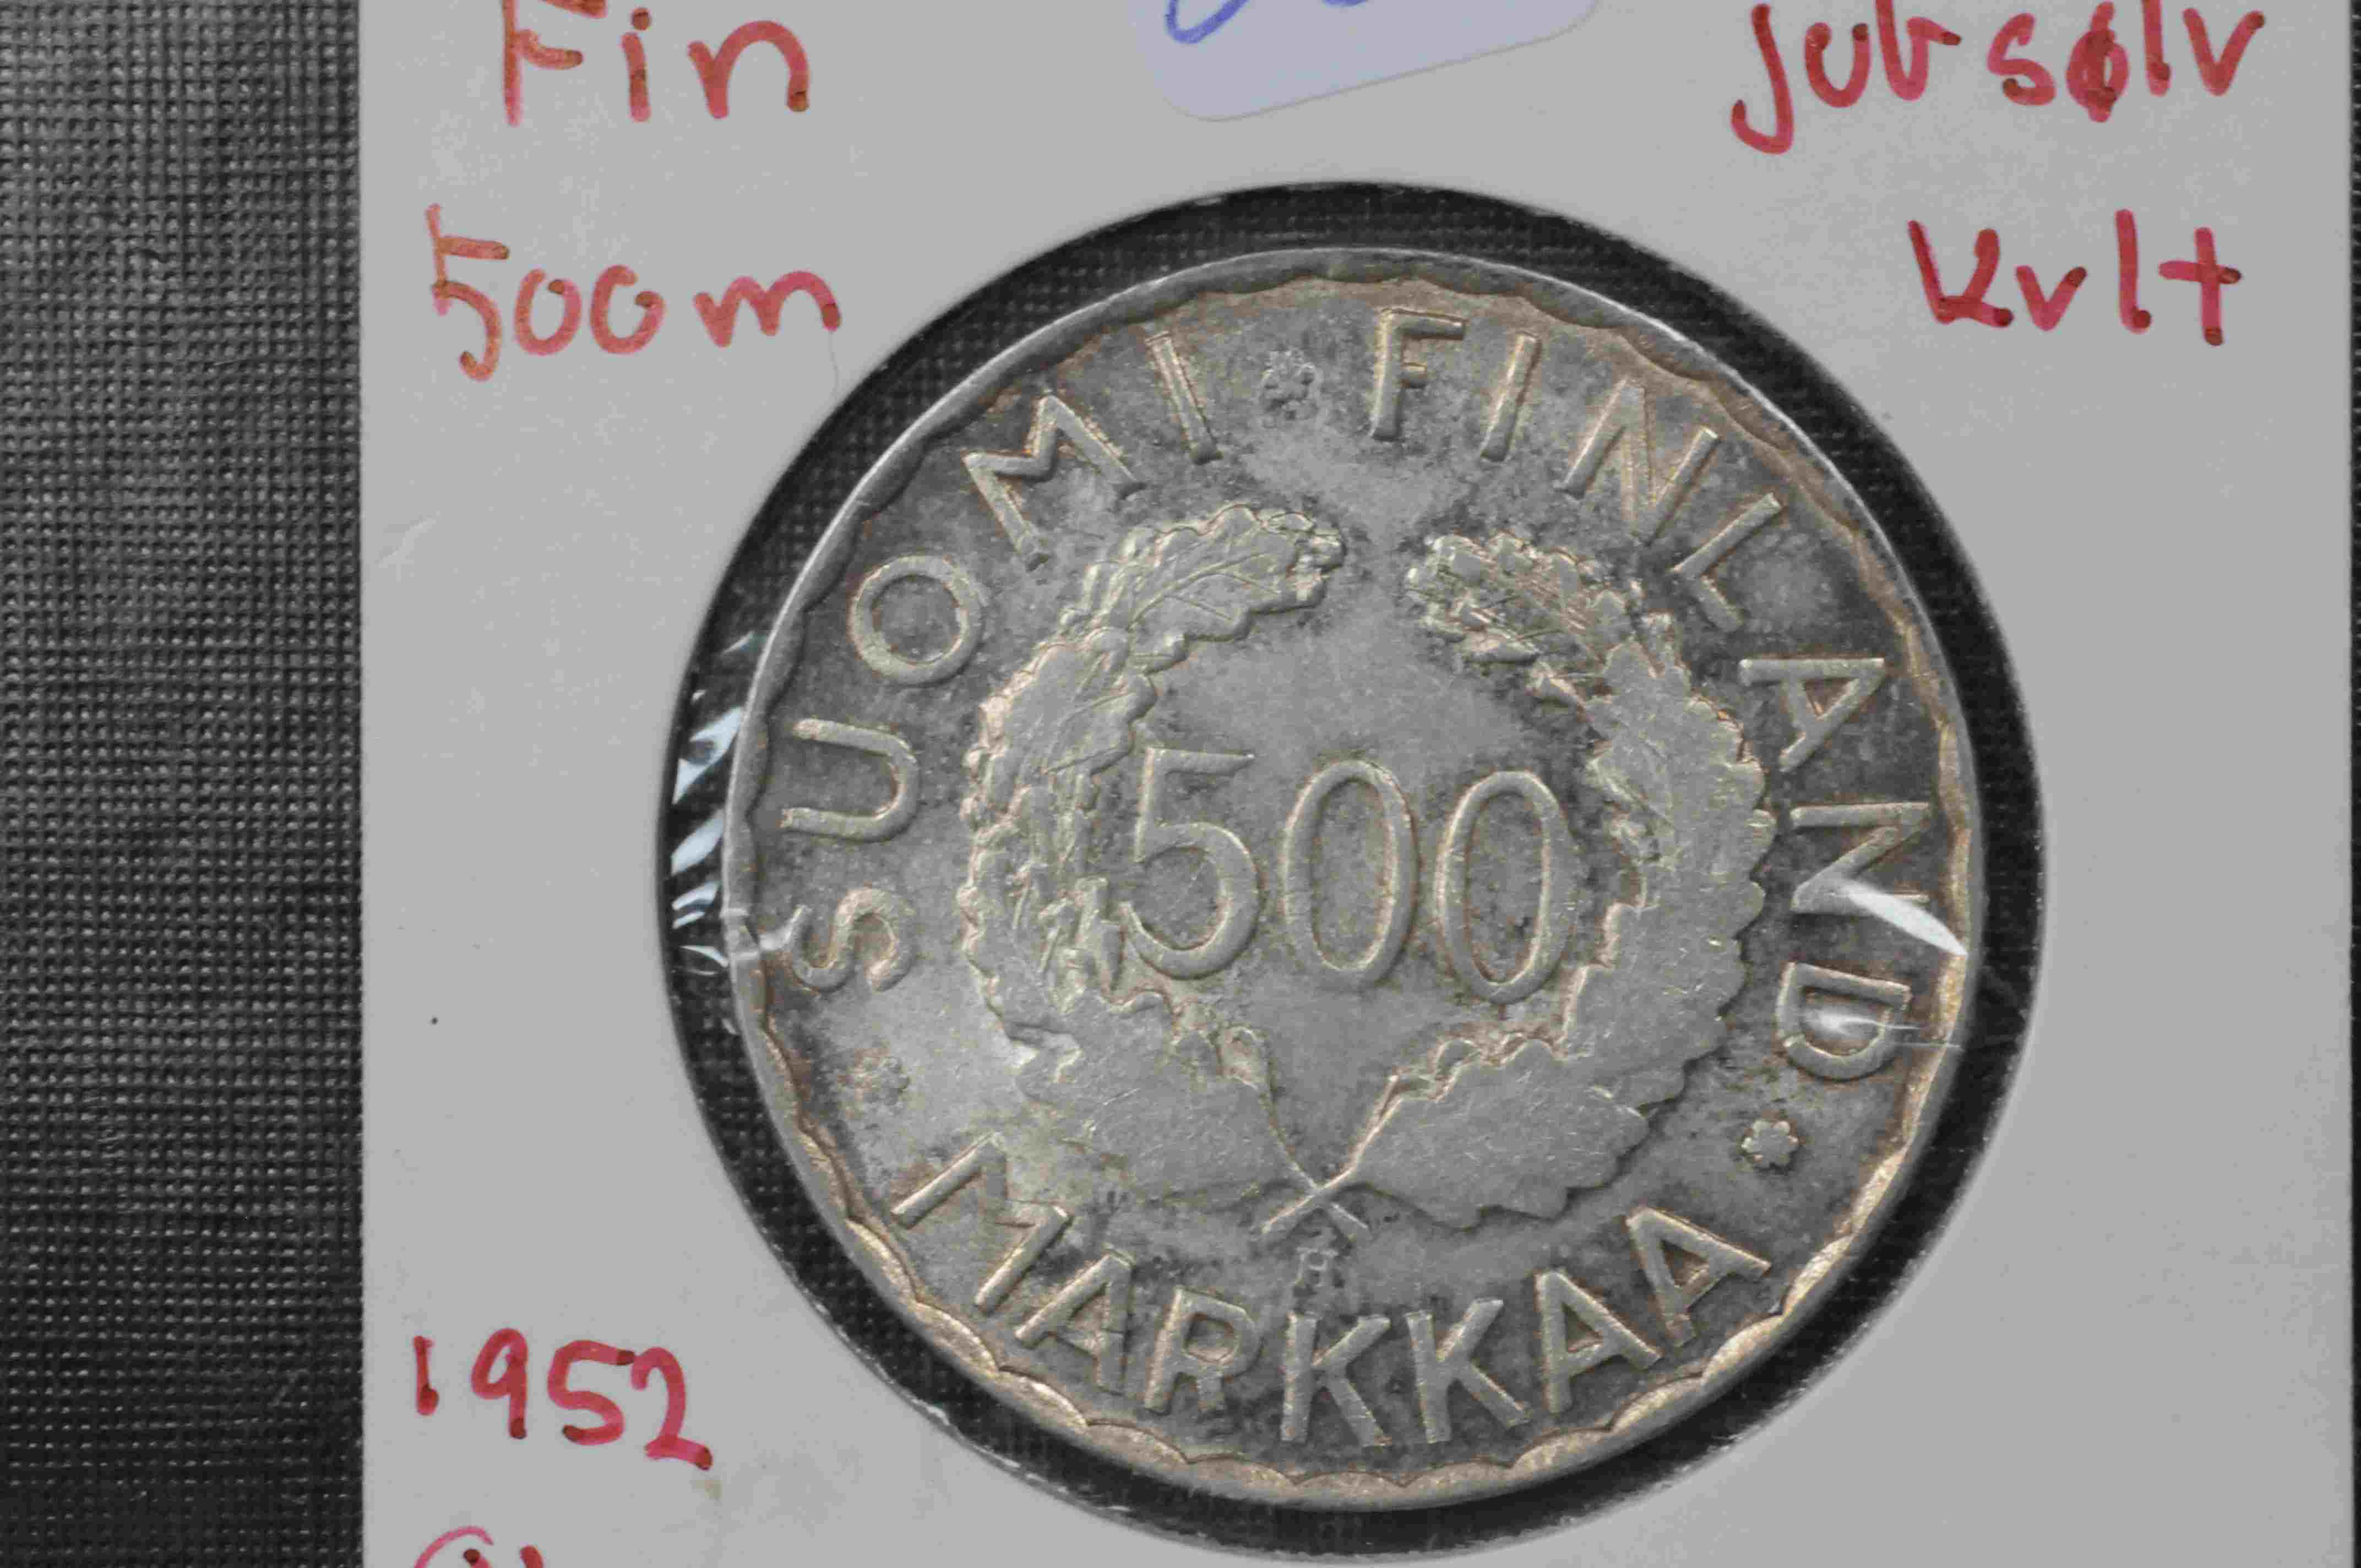 Fin 500M jub sølv kv1/1+  1952 olympiade